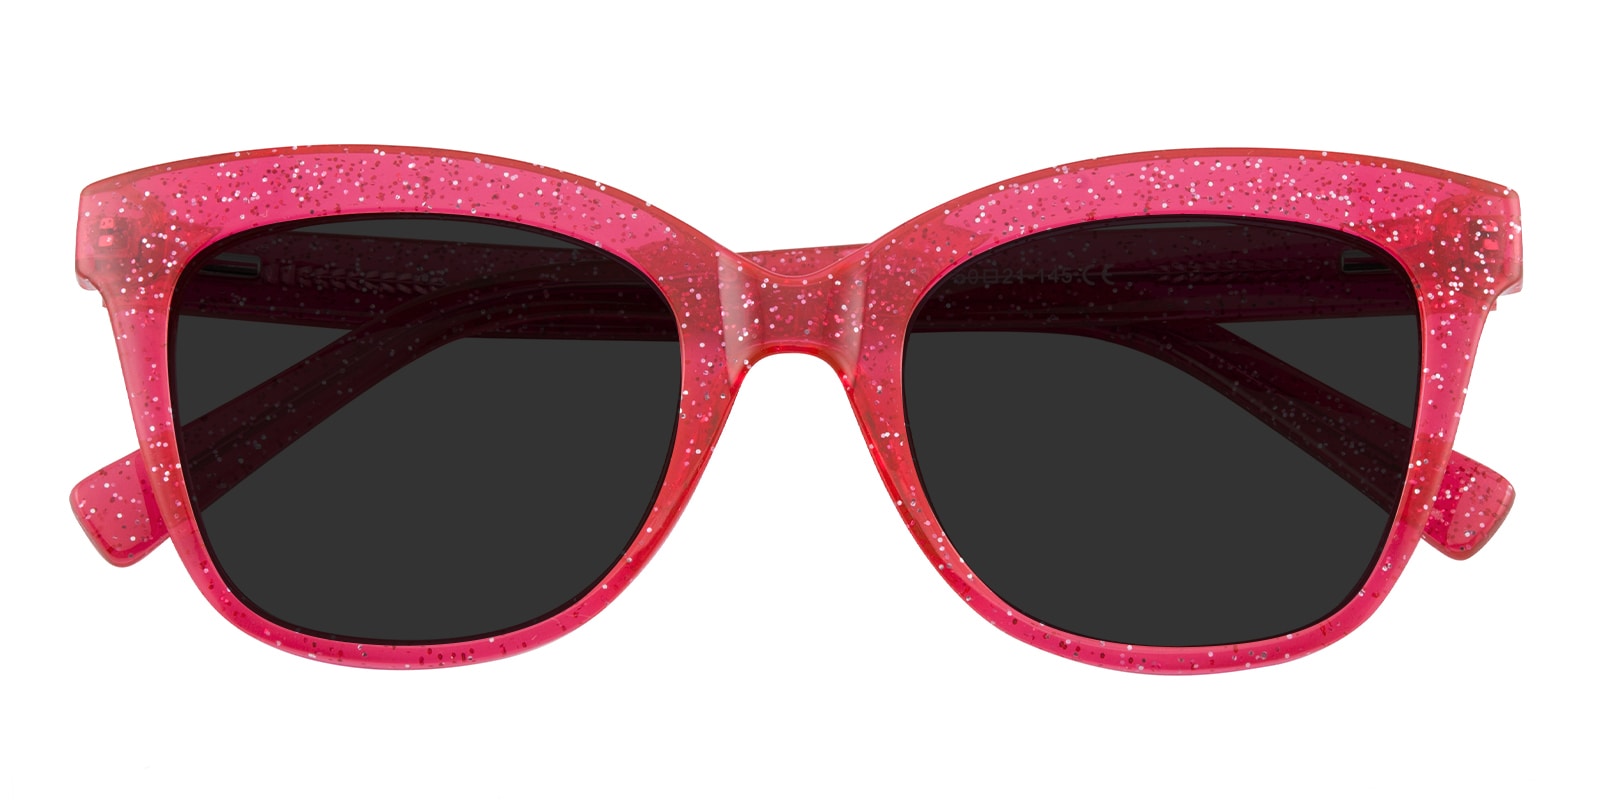 Cat Eye Sunglasses, Full Frame Red Plastic - SUP1149